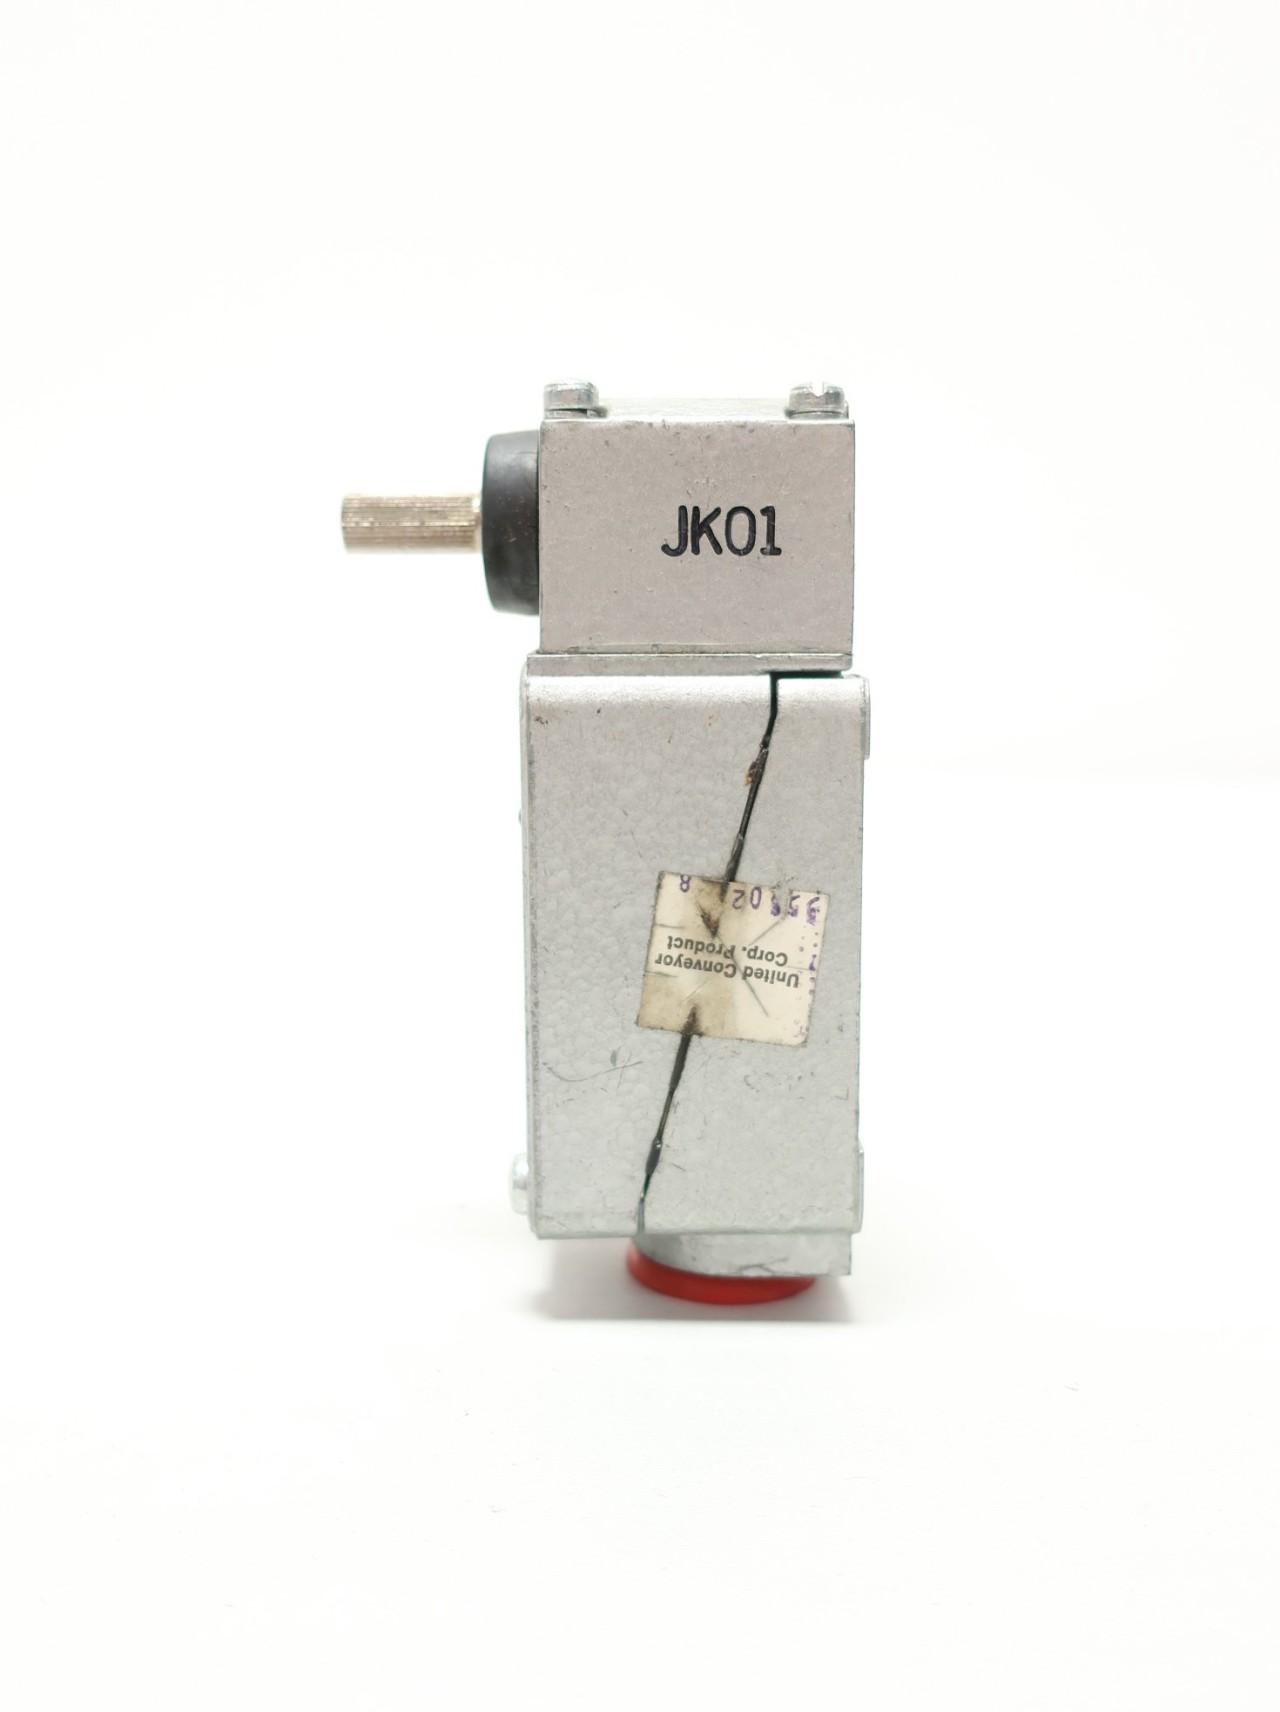 Rb Denison C4BR JK01 Roller Lever Limit Switch 600v-ac 